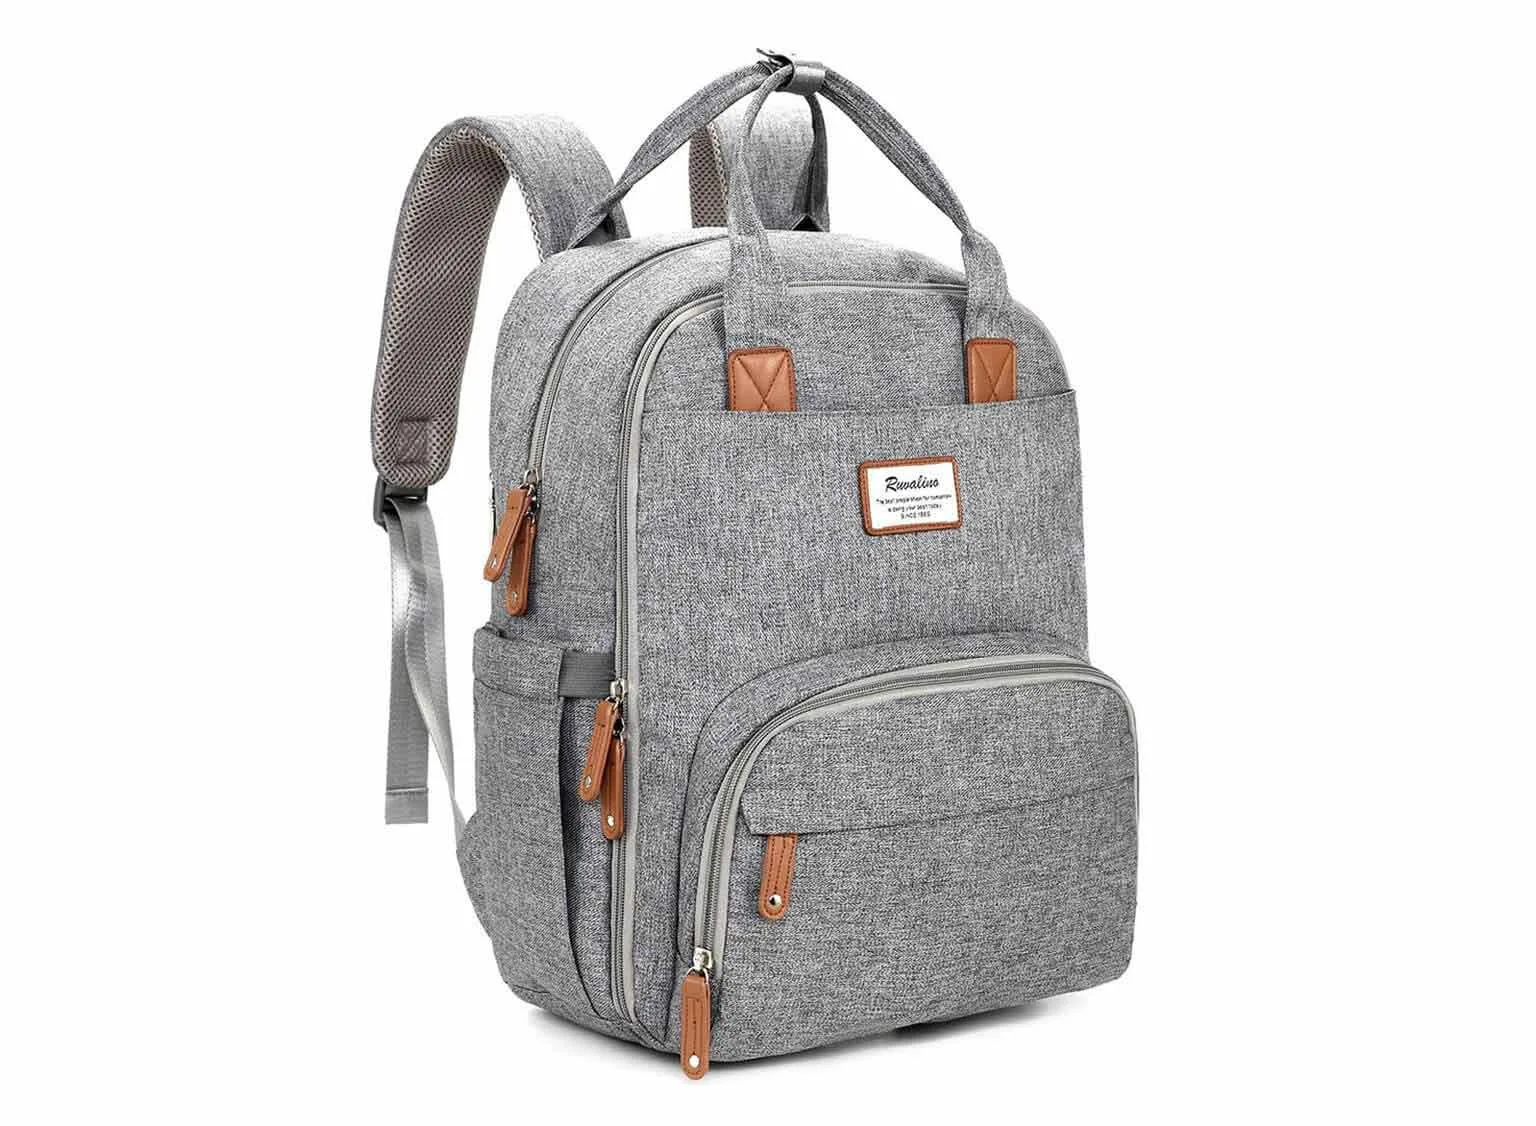 14 Best Backpack Diaper Bags